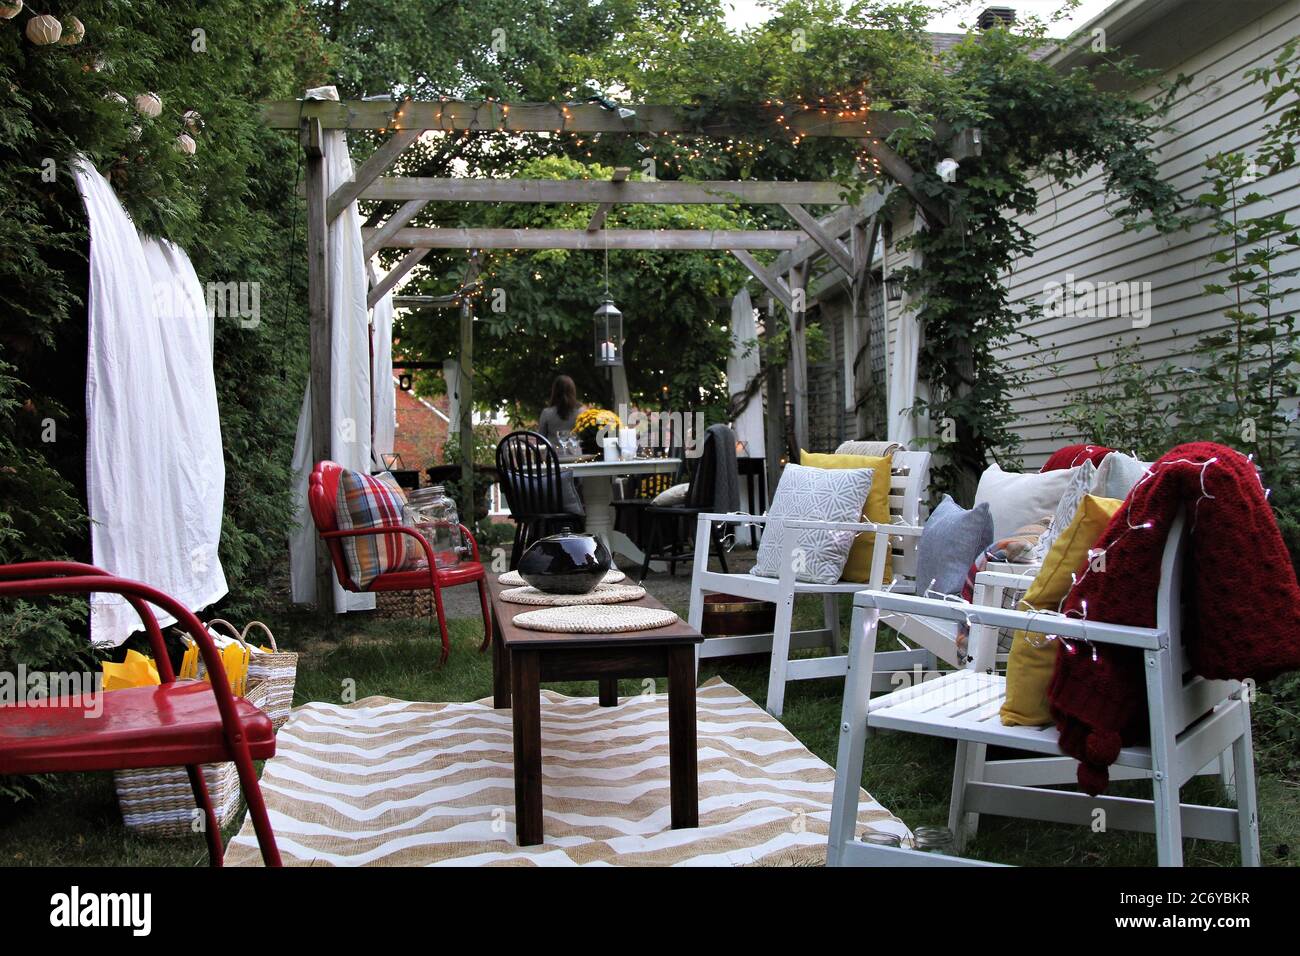 Stellen Sie sich auf, um einen Film im Freien mit Essen und Stühlen, Decken und Kissen auf einer Terrasse zu sehen Stockfoto